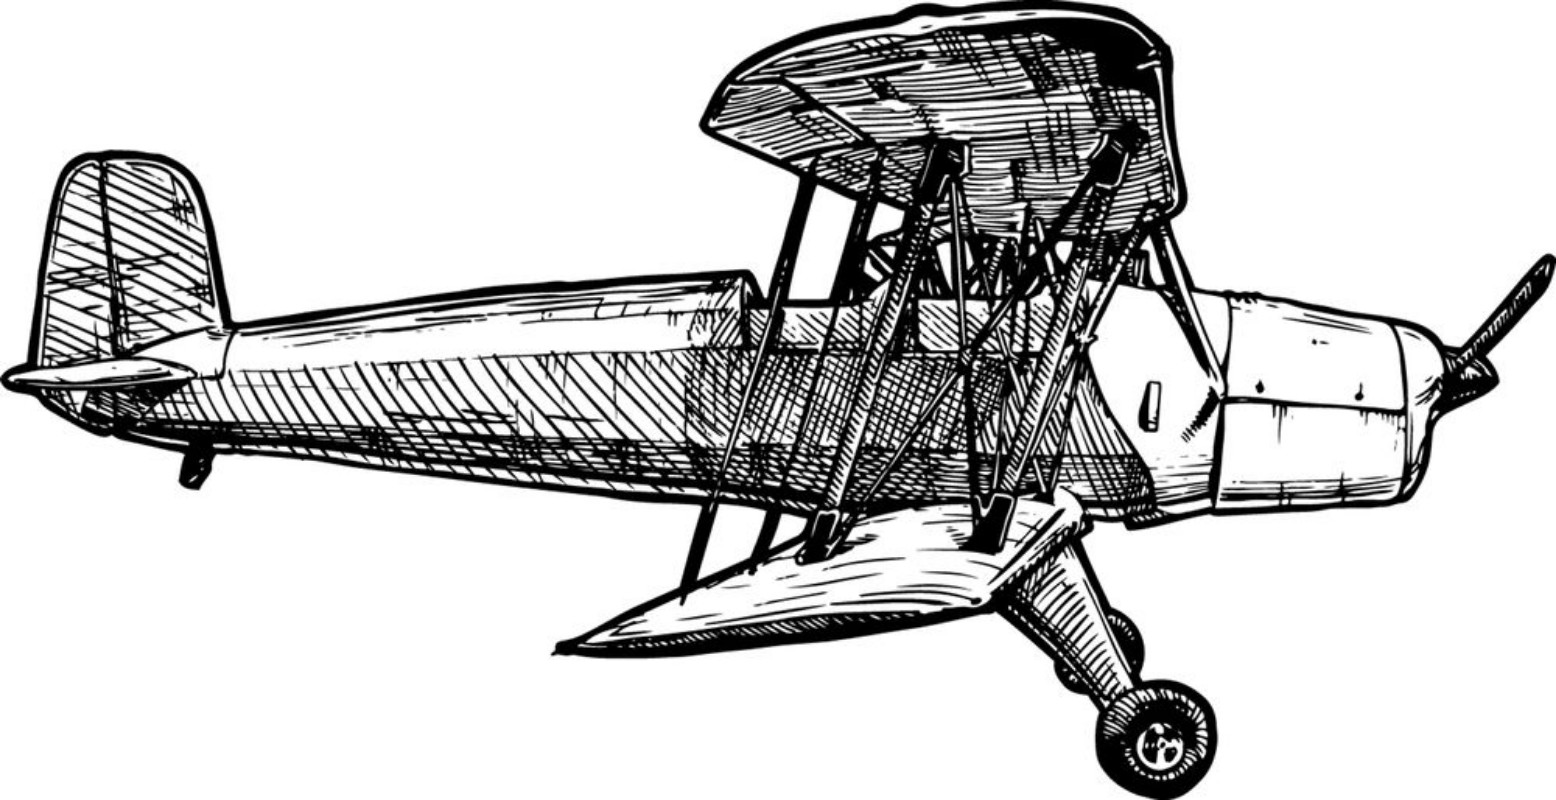 Afbeeldingen van Vector drawing of airplane stylized as engraving